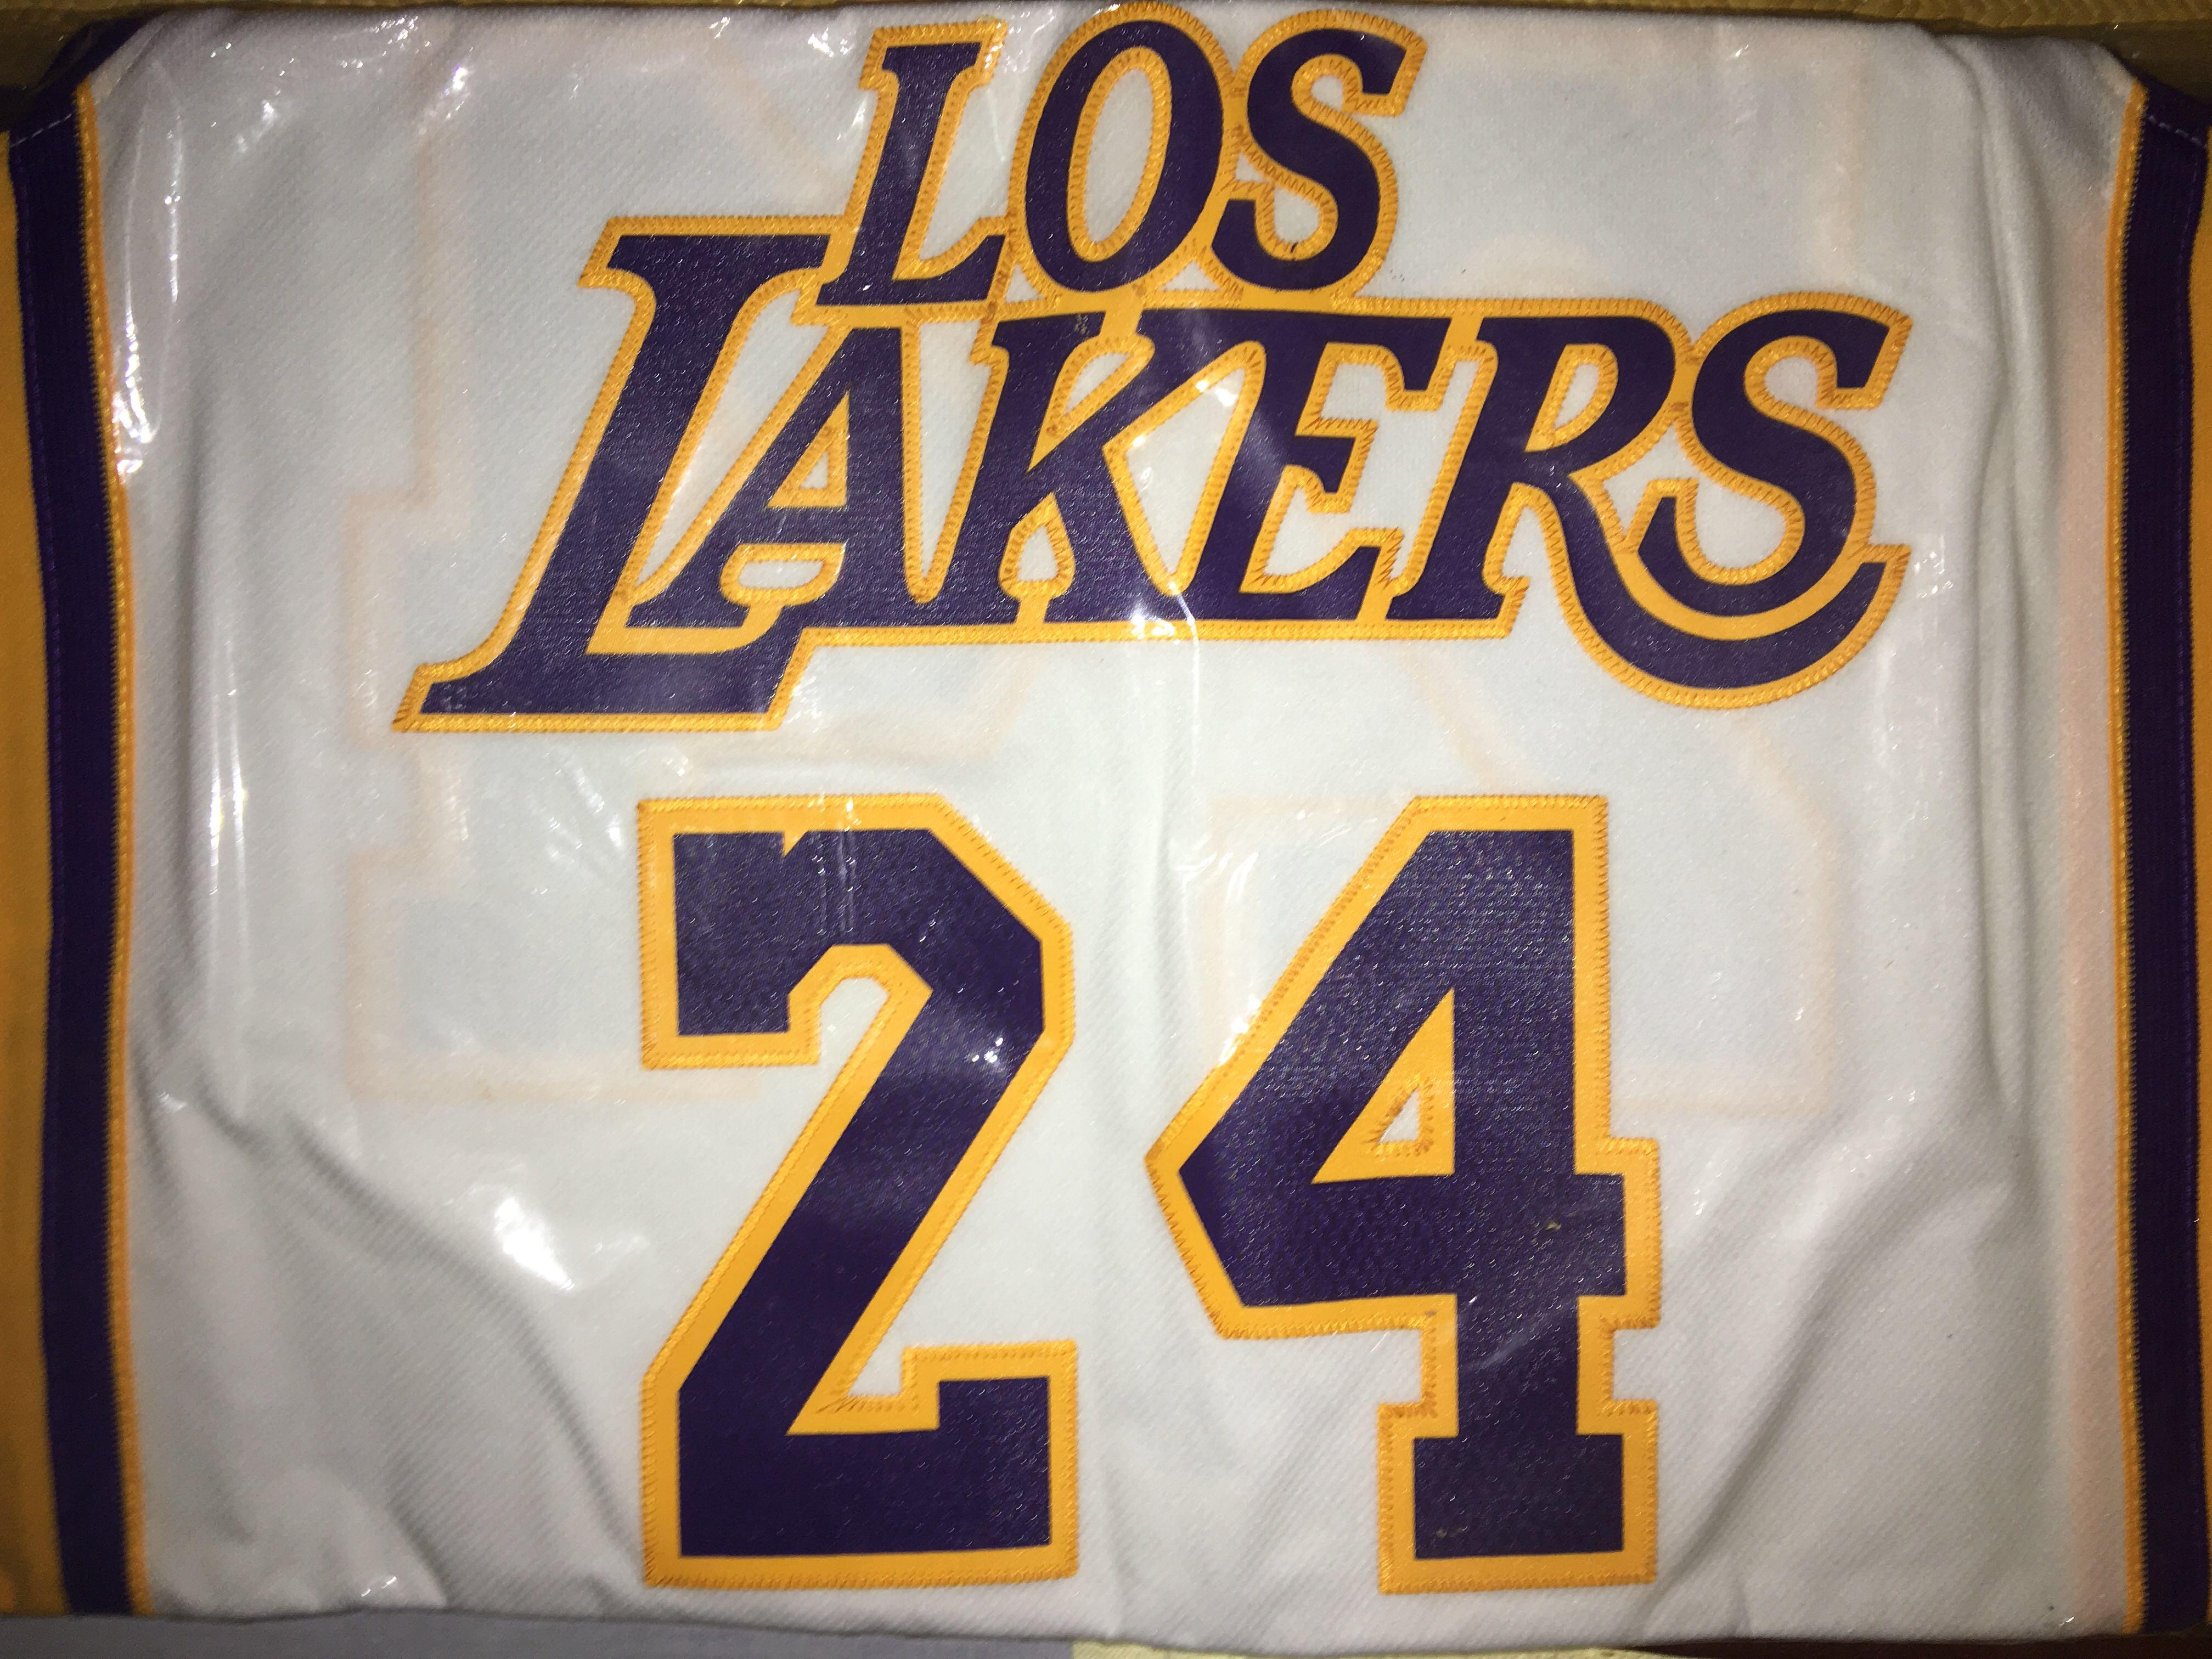 全新Adidas 球迷版拉丁之夜Los Angeles Lakers Kobe Bryant Blanc Latin Nights jersey S  size 全新未剪牌、膠袋密封多年。, 男裝, 運動服裝- Carousell